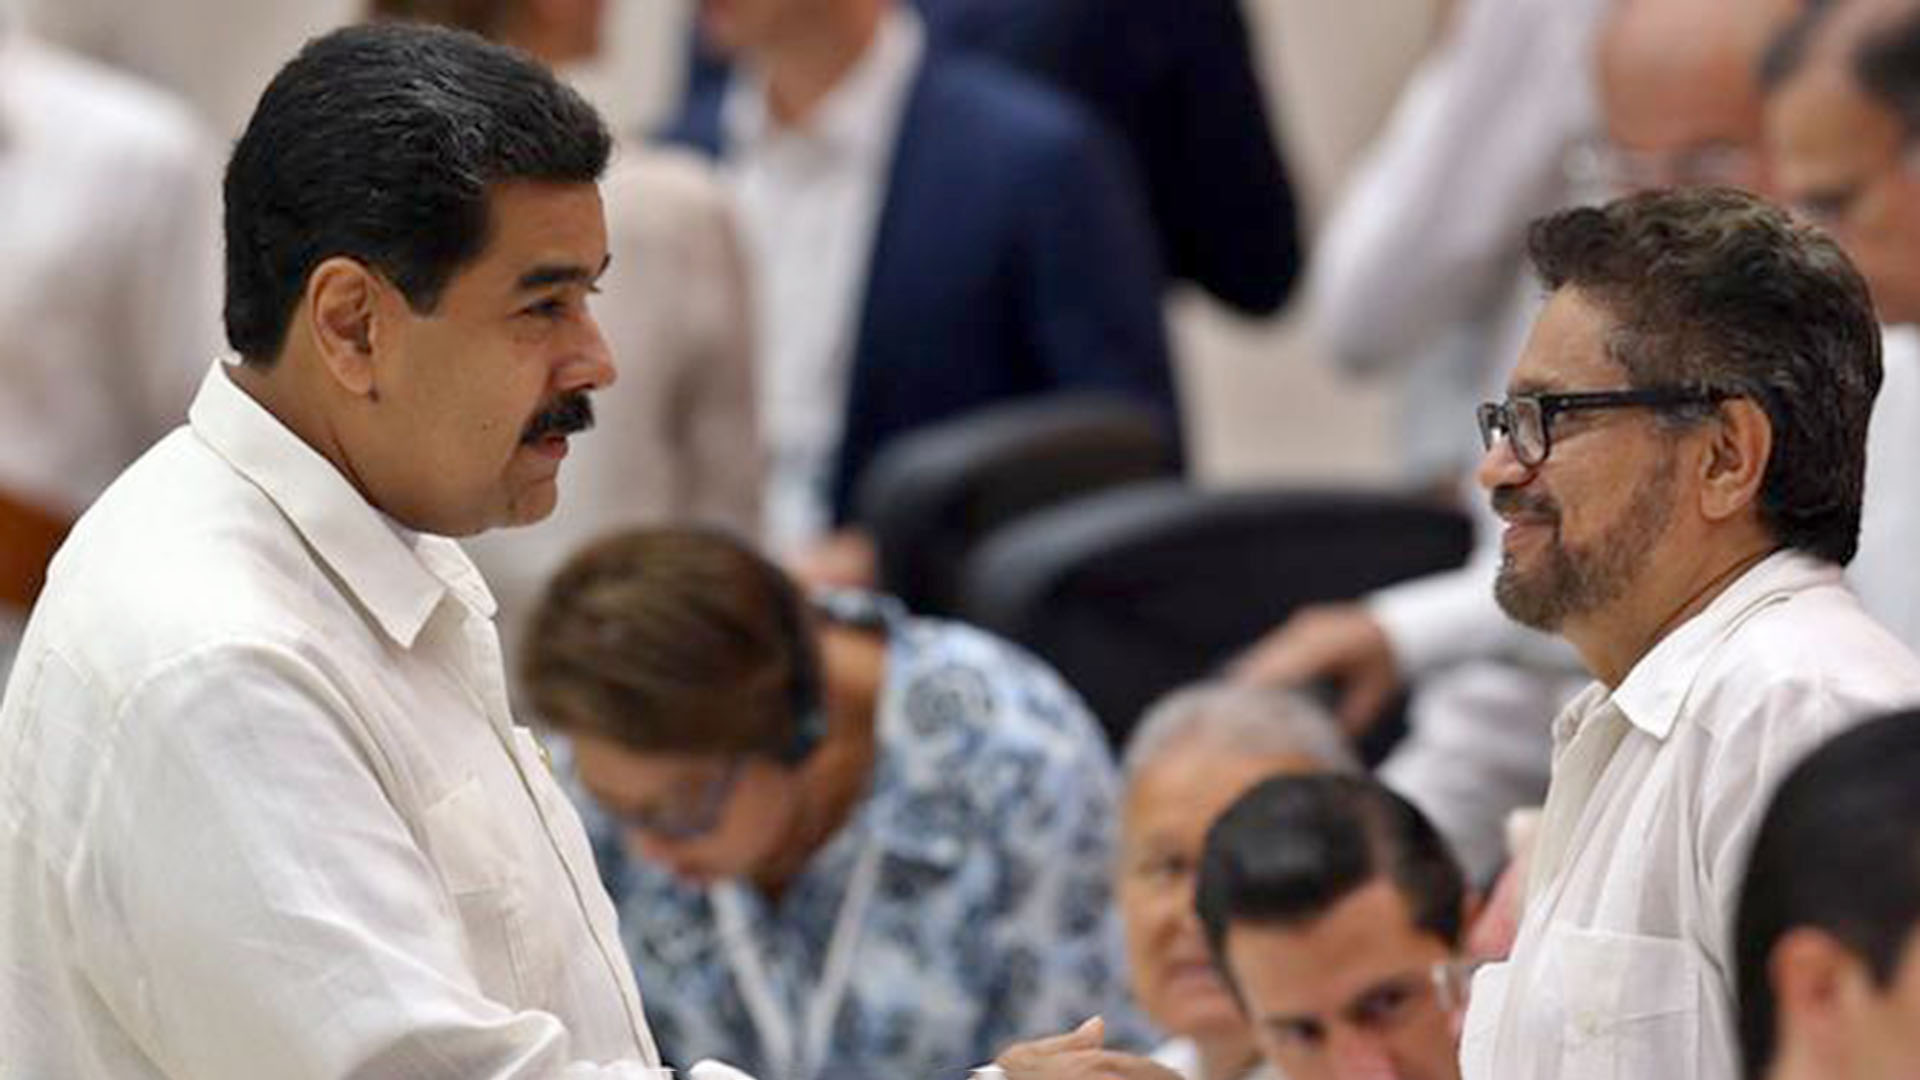 Nicolás Maduro saluda a Ivan Márquez, uno de los jefe de las disidencias de las FARC